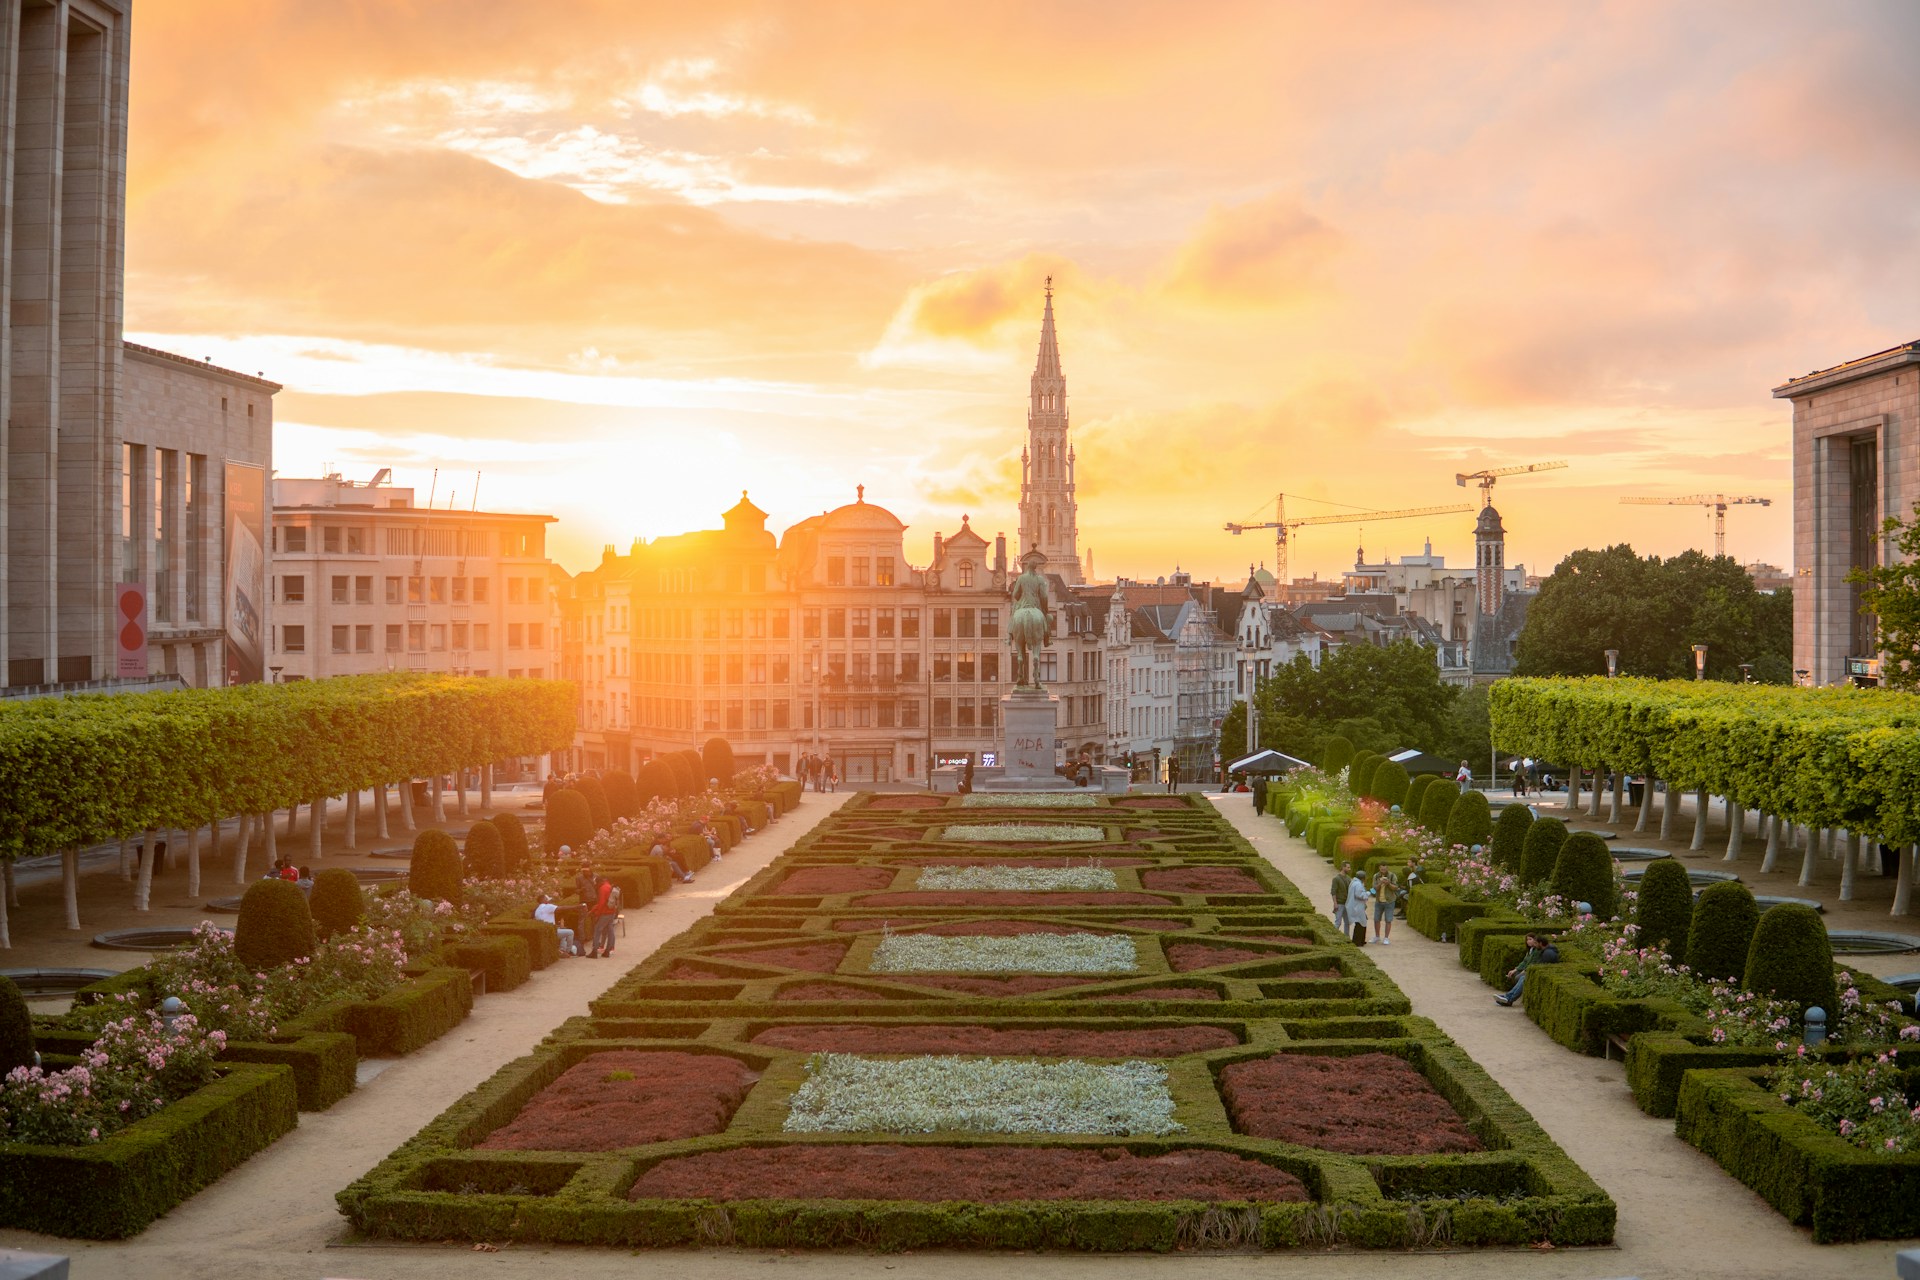 Brussel: verhoging van de toeristentaks!